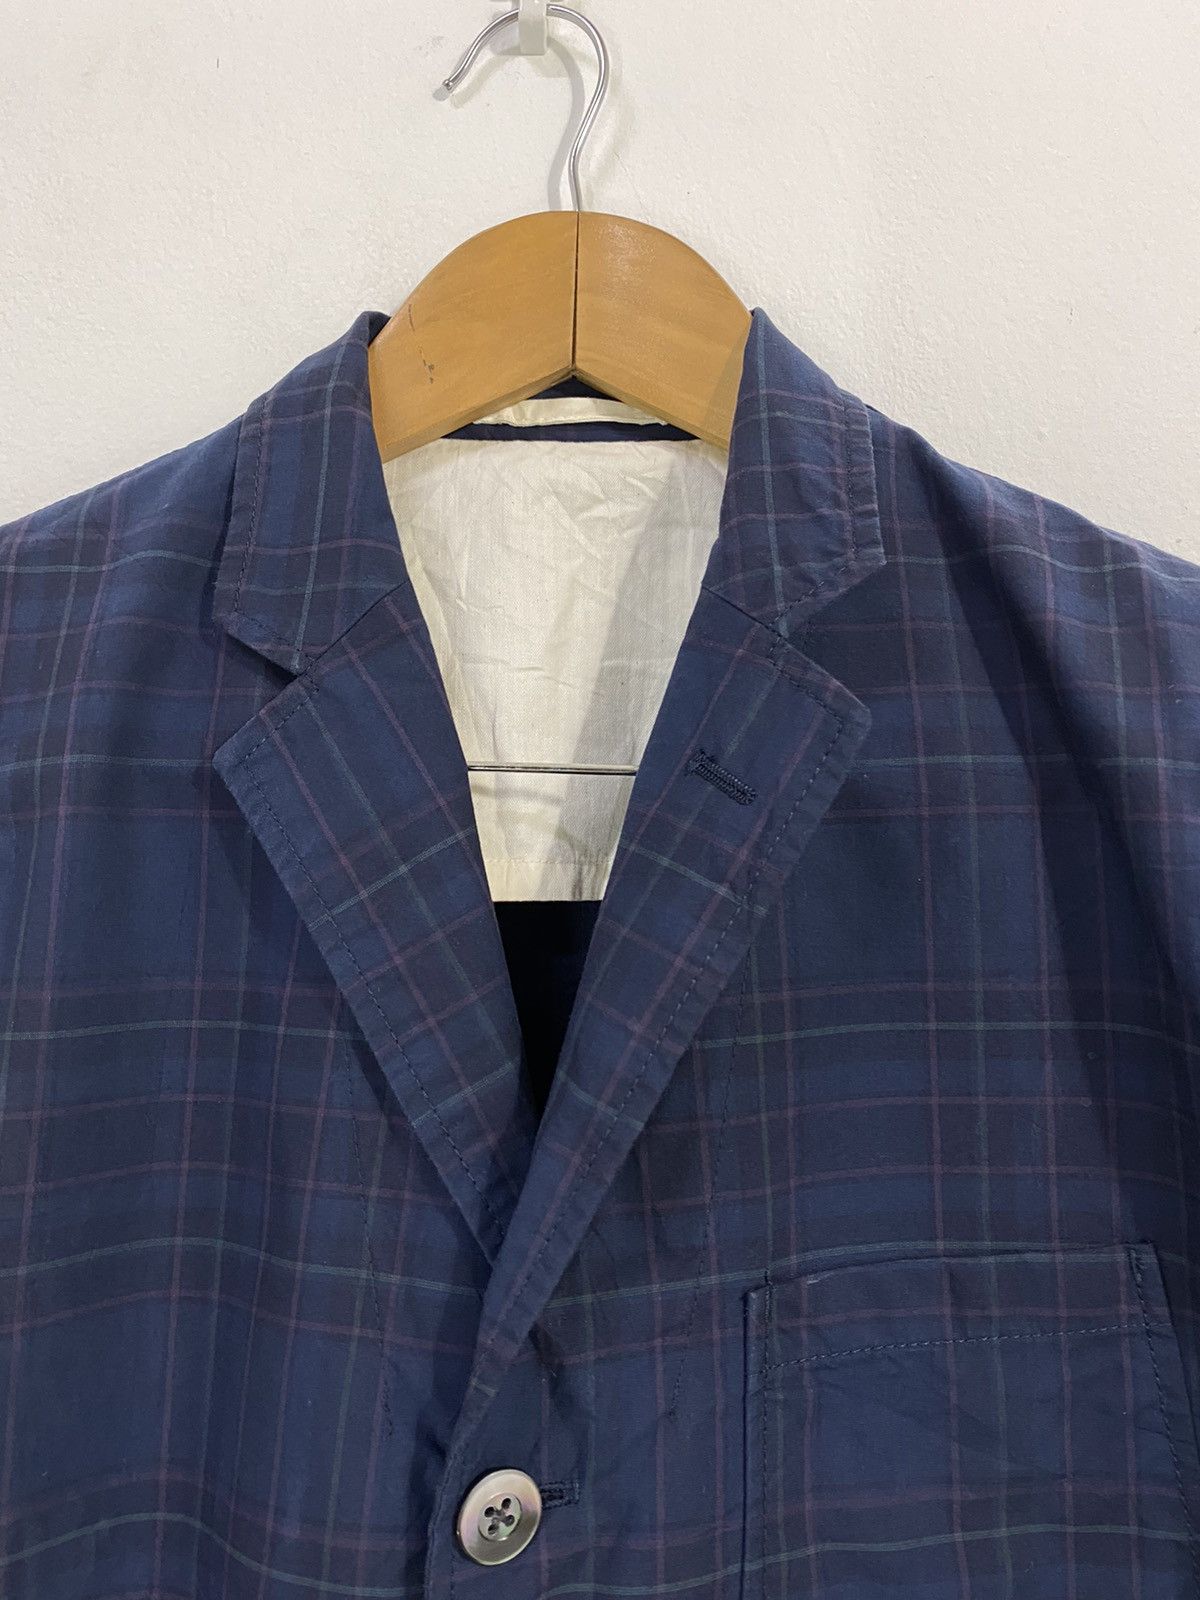 Beams+ Tartan Jacket Original Fabric Nice Design - 3